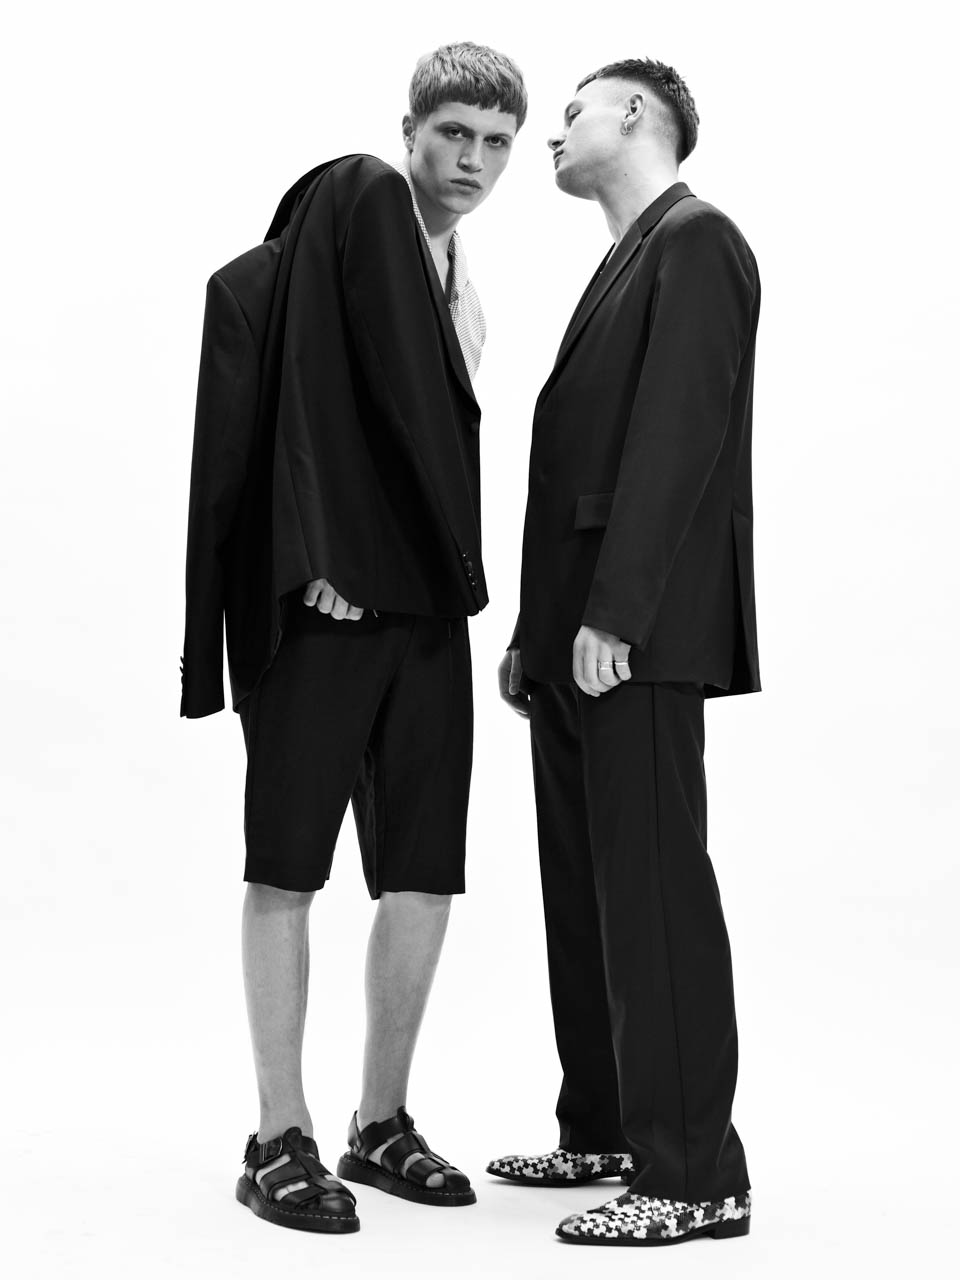 Dreamer — Left: Shirt & Jacket Sandro Trousers Whyred Sandals Dr. Martens / Right: Suit COS Shoes Floris van Bommel